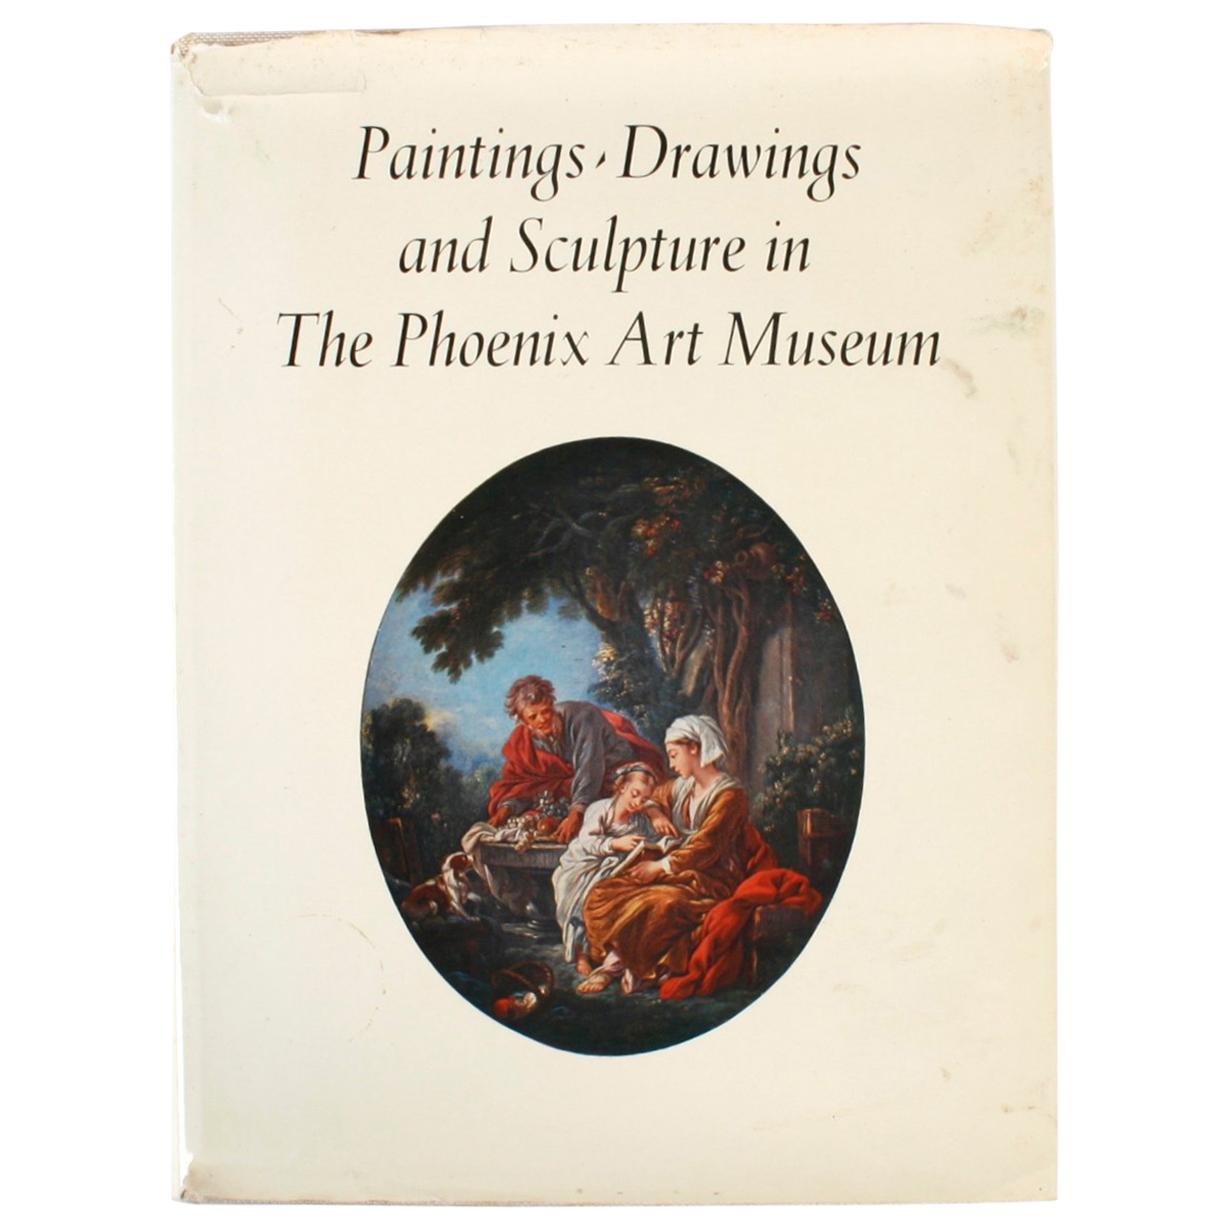 Gemälde Zeichnungen, Zeichnungen und Skulpturen aus der Sammlung des Phoenix Art Museum, 1st Ed